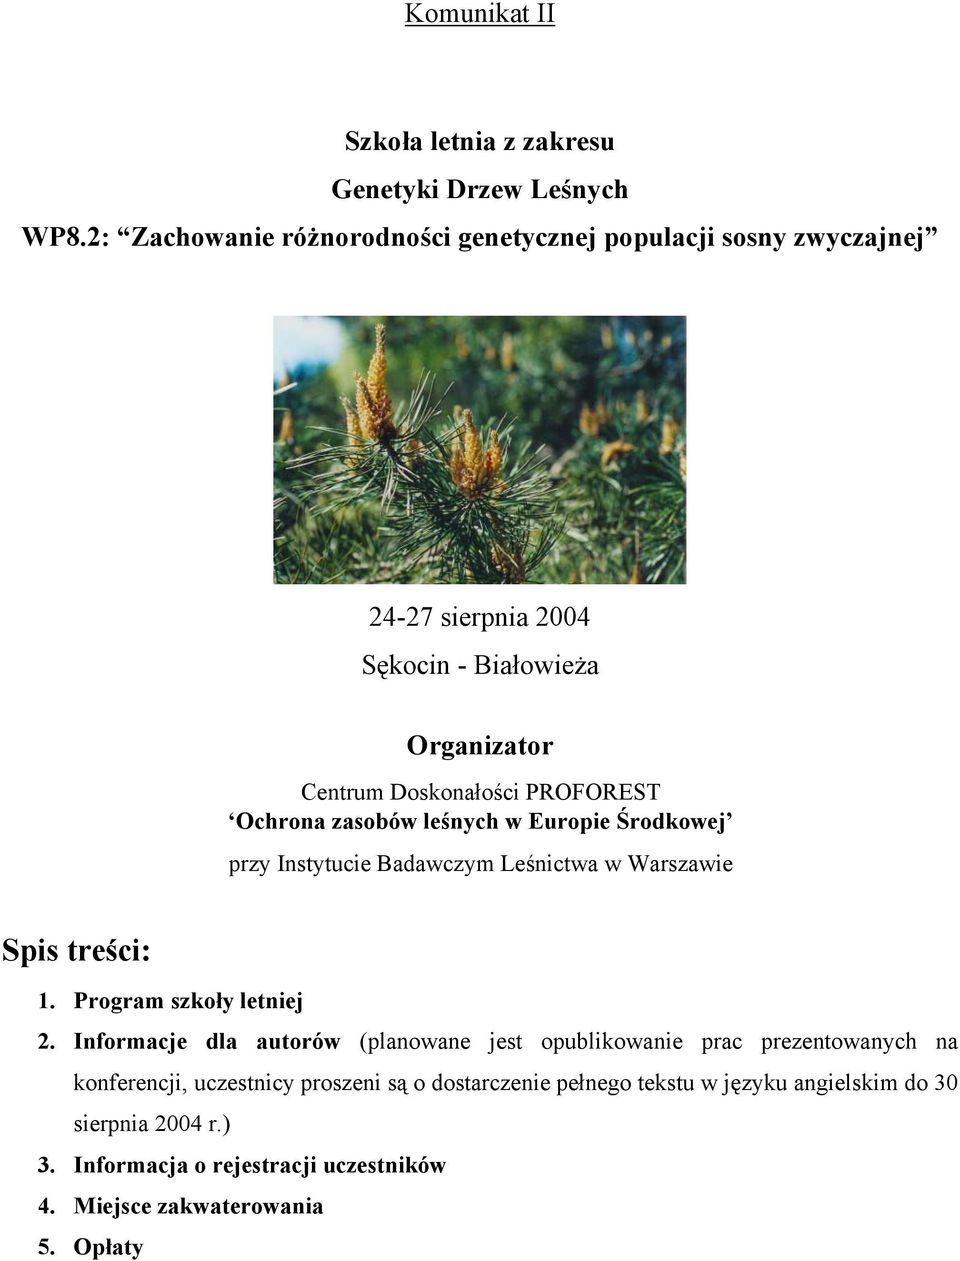 Ochrona zasobów leśnych w Europie Środkowej przy Instytucie Badawczym Leśnictwa w Warszawie Spis treści: 1. Program szkoły letniej 2.